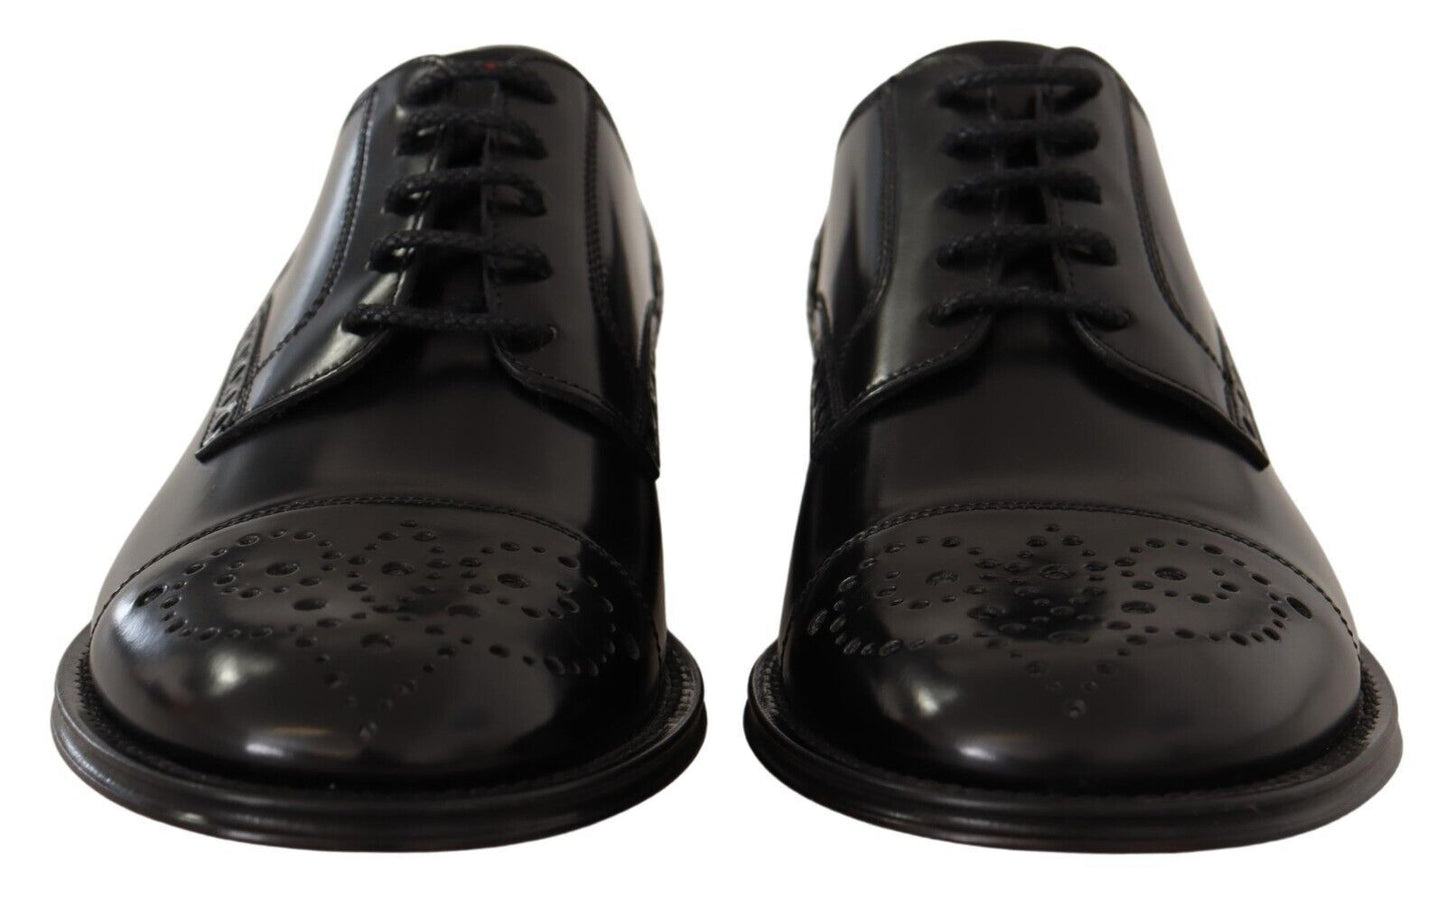 Dolce & Gabbana in pelle nera a wingtip scarpe derby formali